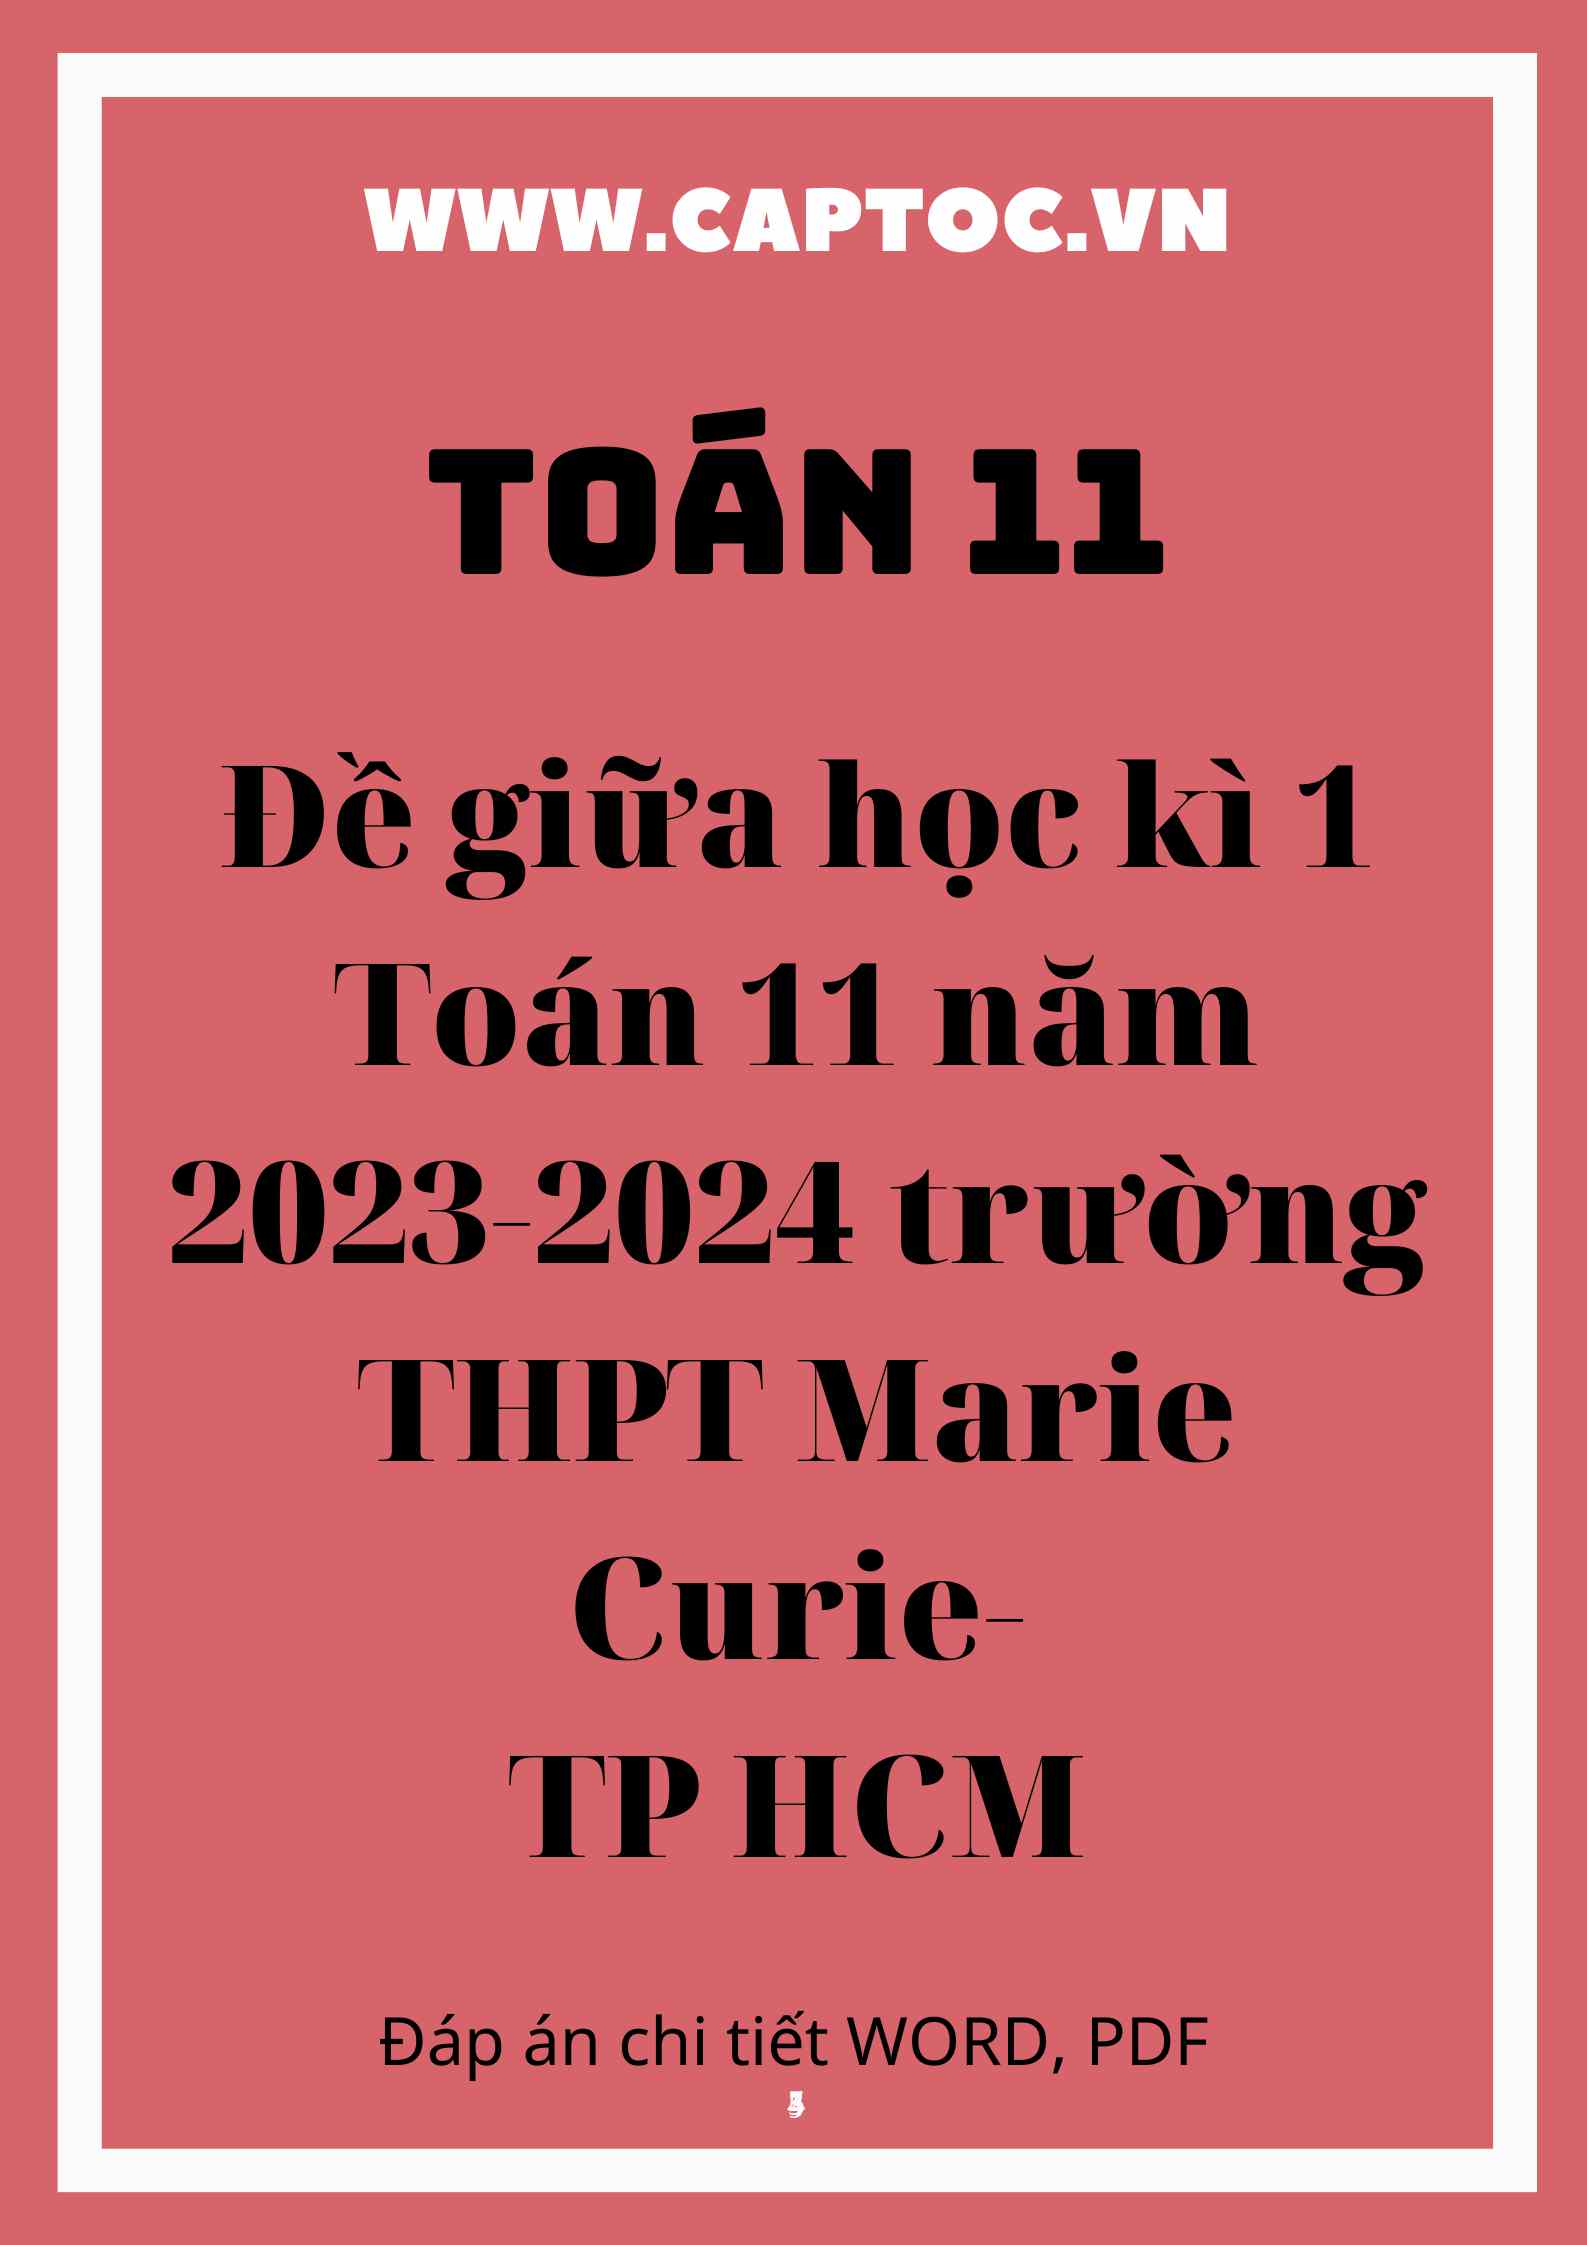 Đề giữa học kì 1 Toán 11 năm 2023-2024 trường THPT Marie Curie-TP HCM